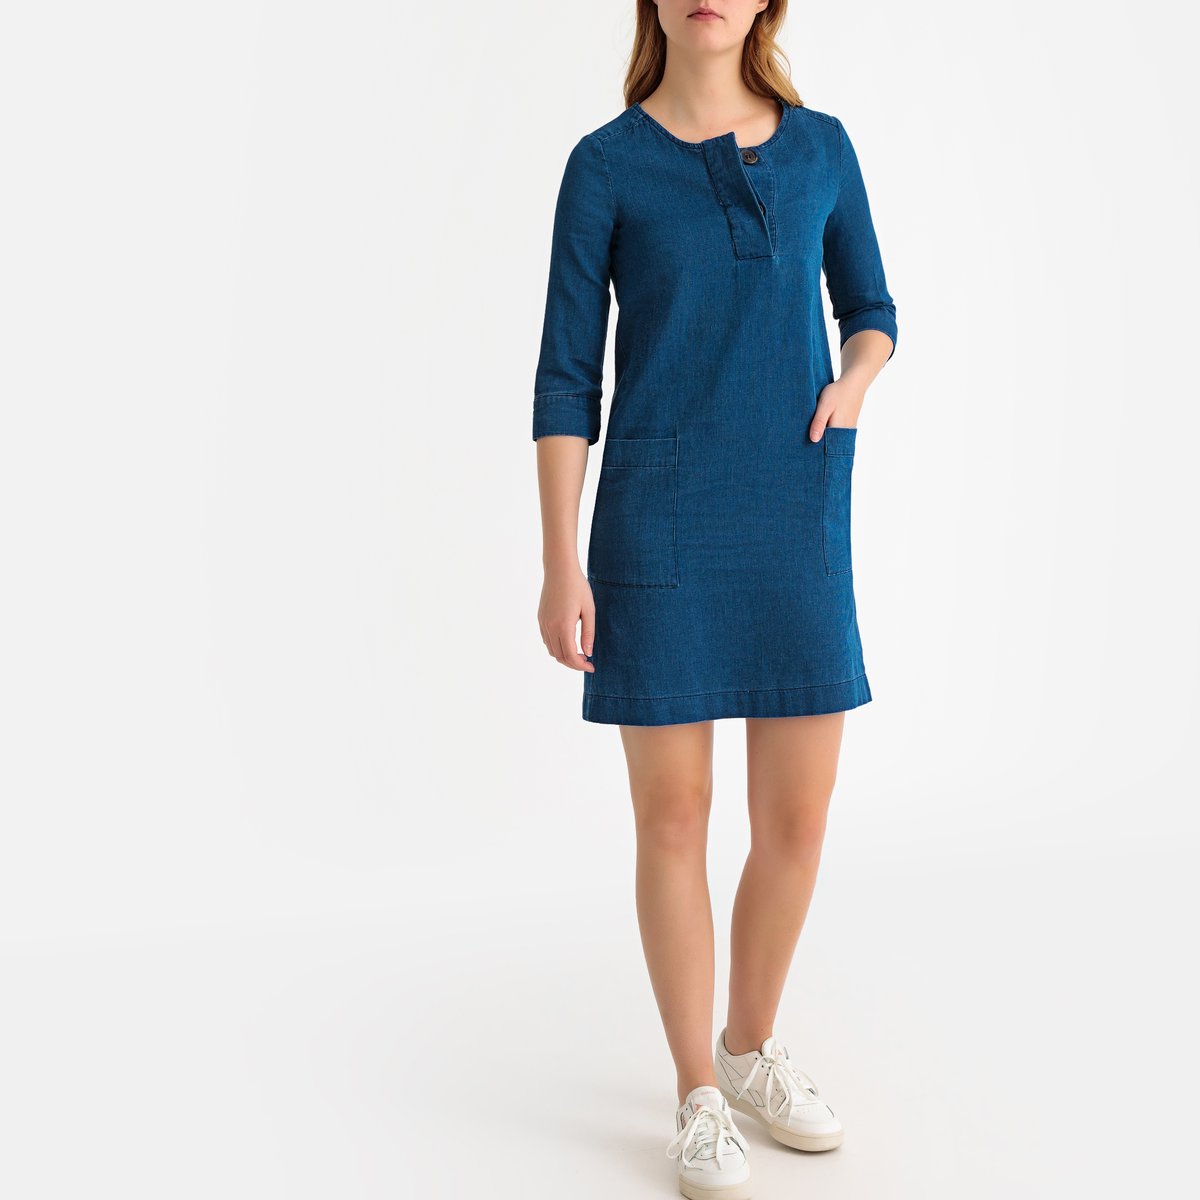 Платье La Redoute Прямое короткое с рукавами 40 (FR) - 46 (RUS) синий, размер 40 (FR) - 46 (RUS) Прямое короткое с рукавами 40 (FR) - 46 (RUS) синий - фото 2